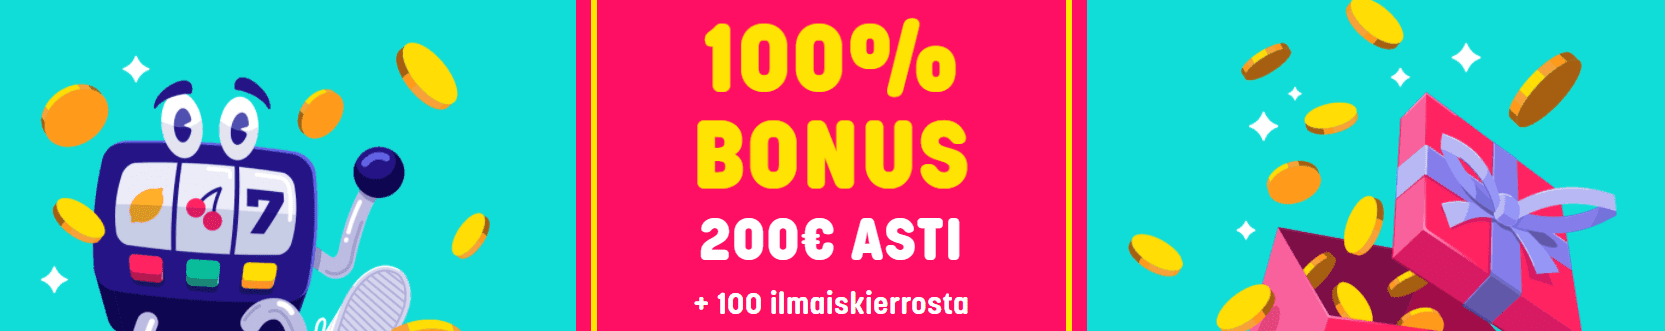 caxino FI 200 euro bonus + 100 ilmaiskierrosta